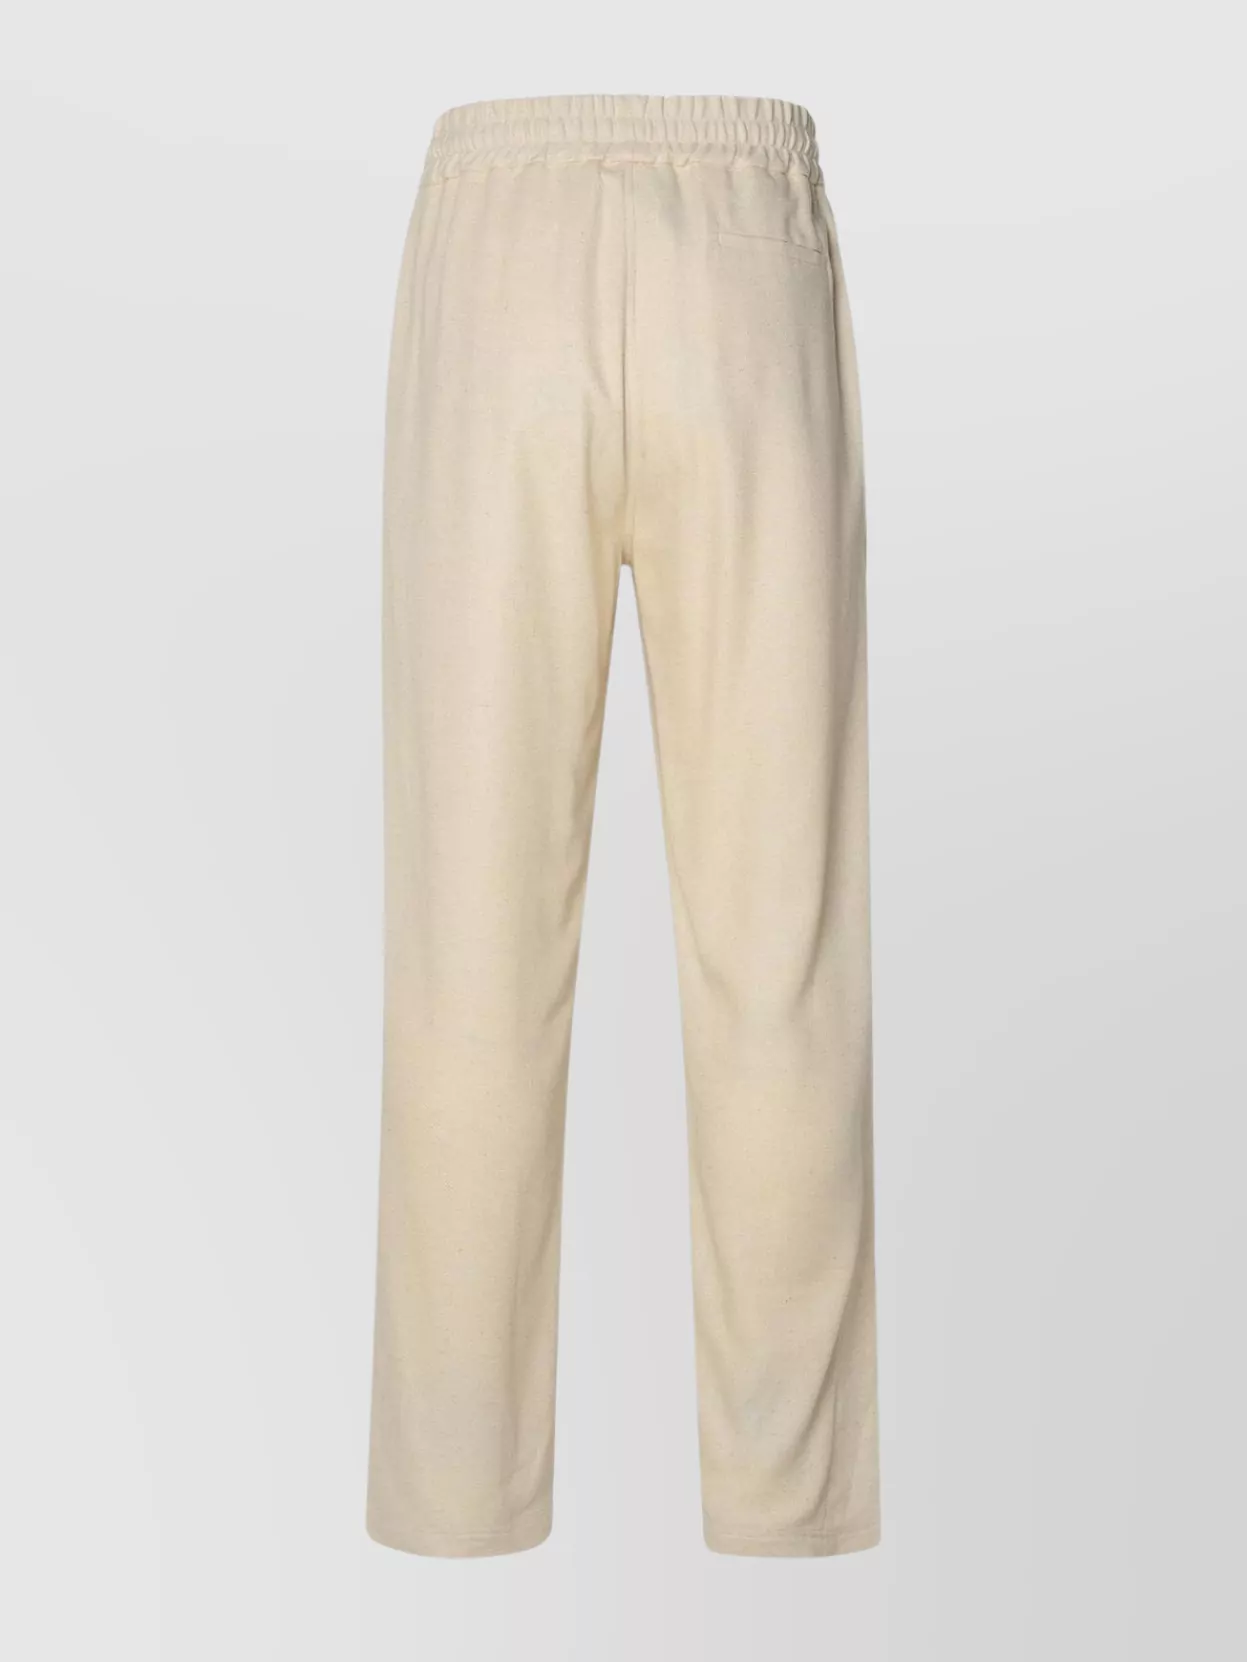 Gcds Linen Blend Trousers Featuring Elastic Waistband